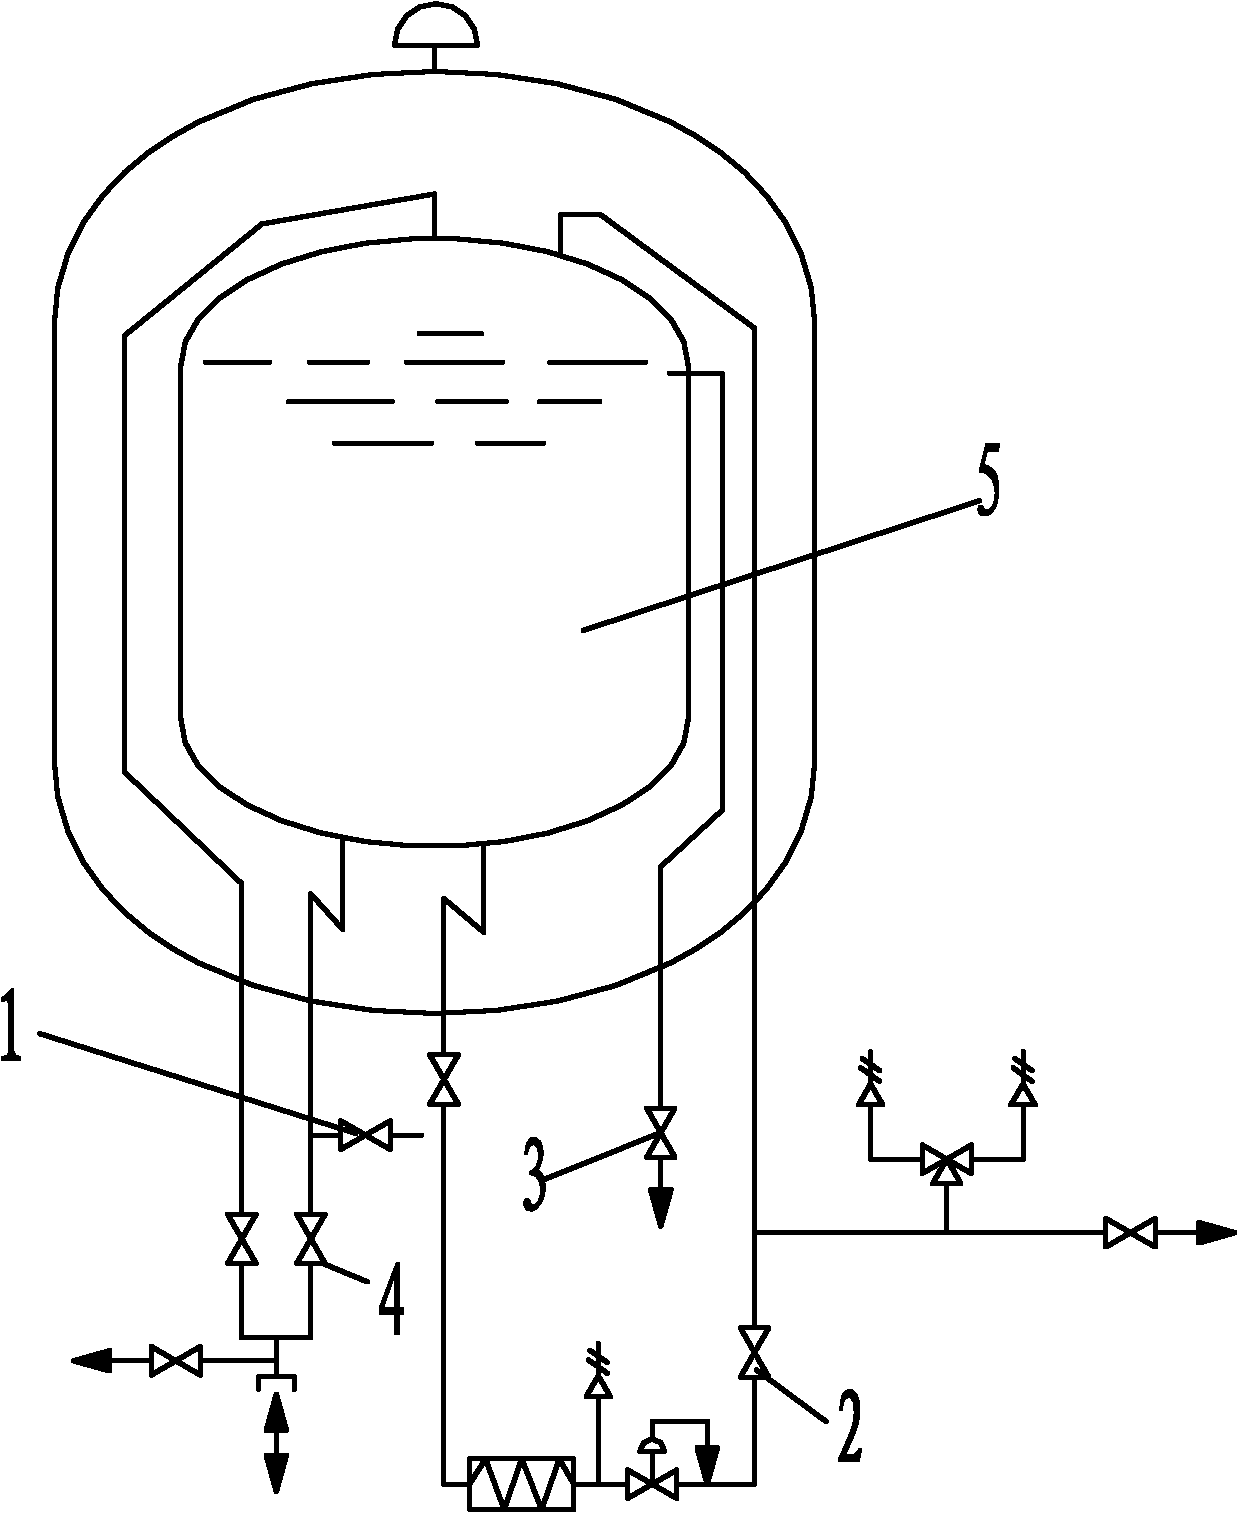 液氧贮槽的结构图片